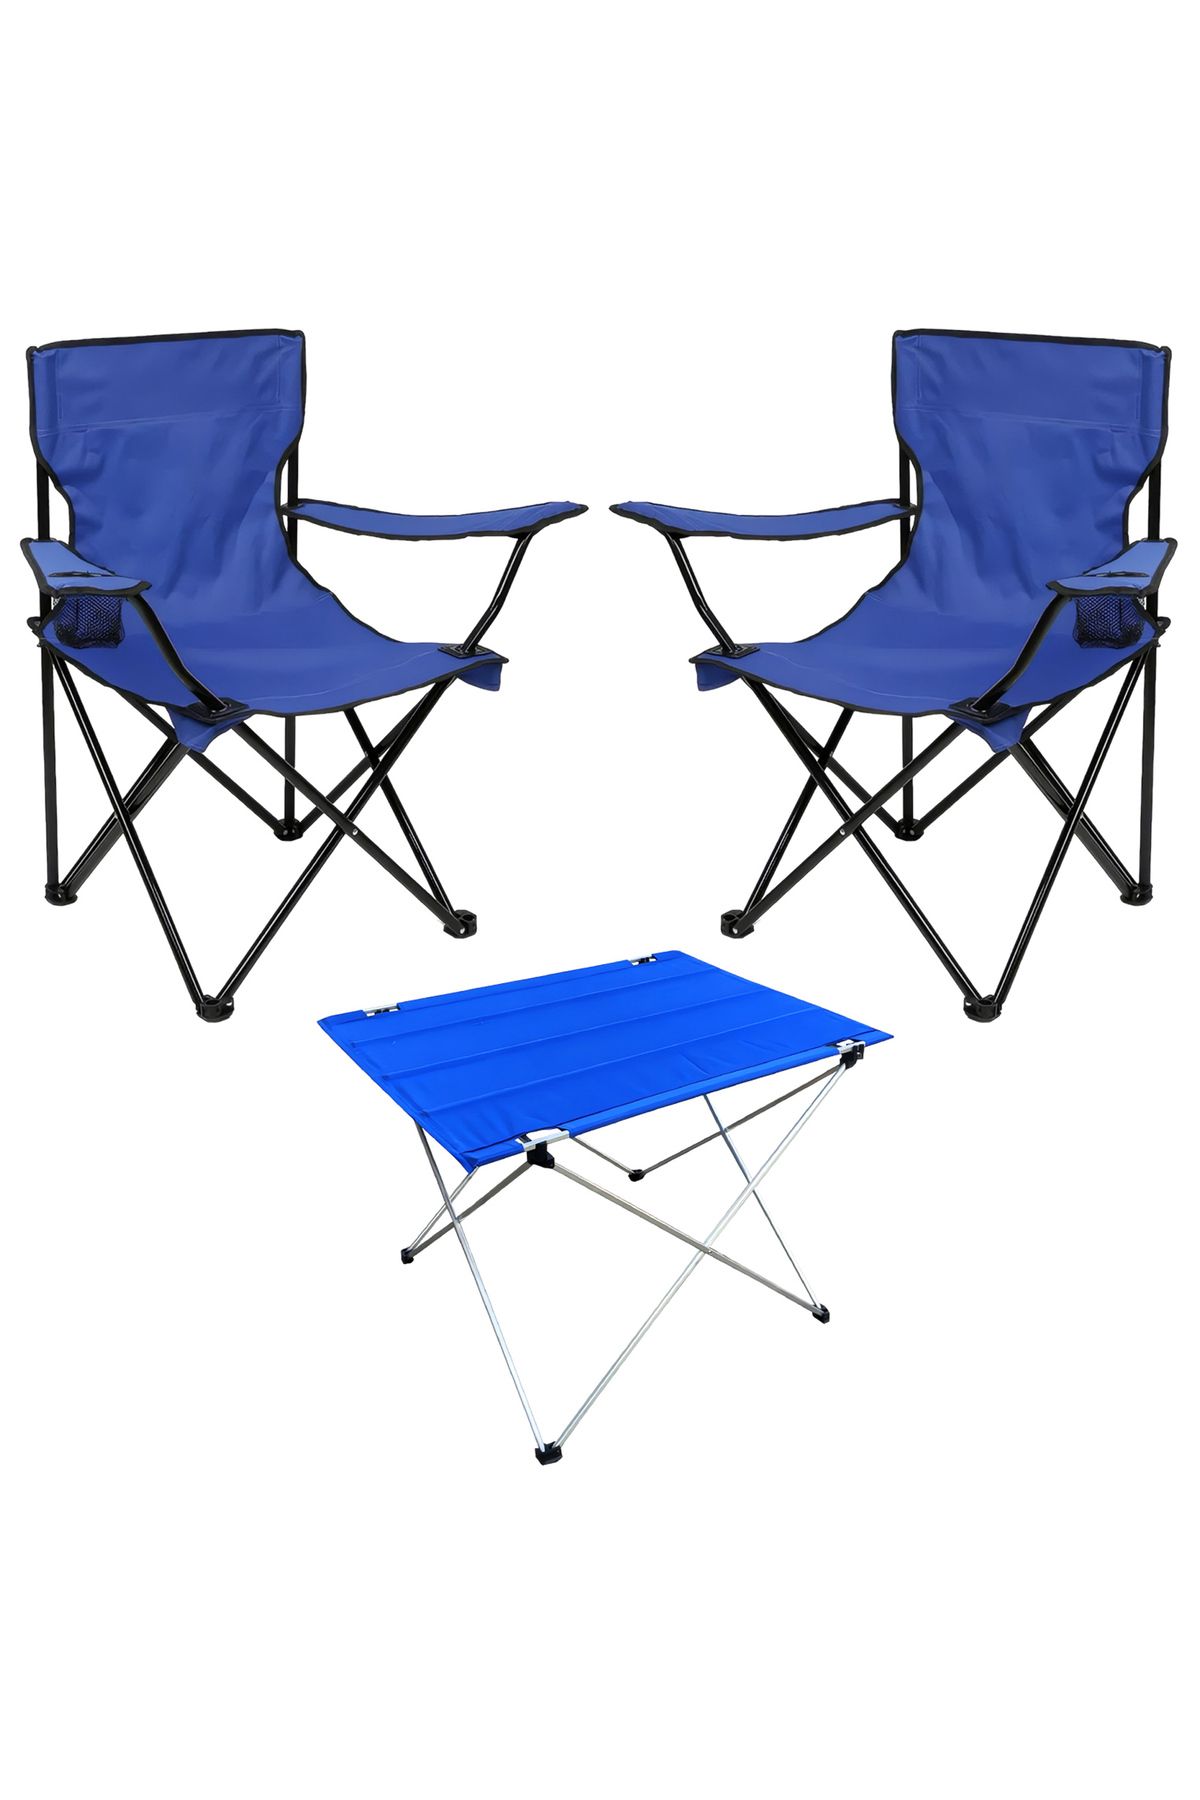 Genel Markalar Savex 2'li Bardaklı Katlanabilir Sandalye Ve Masa Seti - Mavi (DY.001)